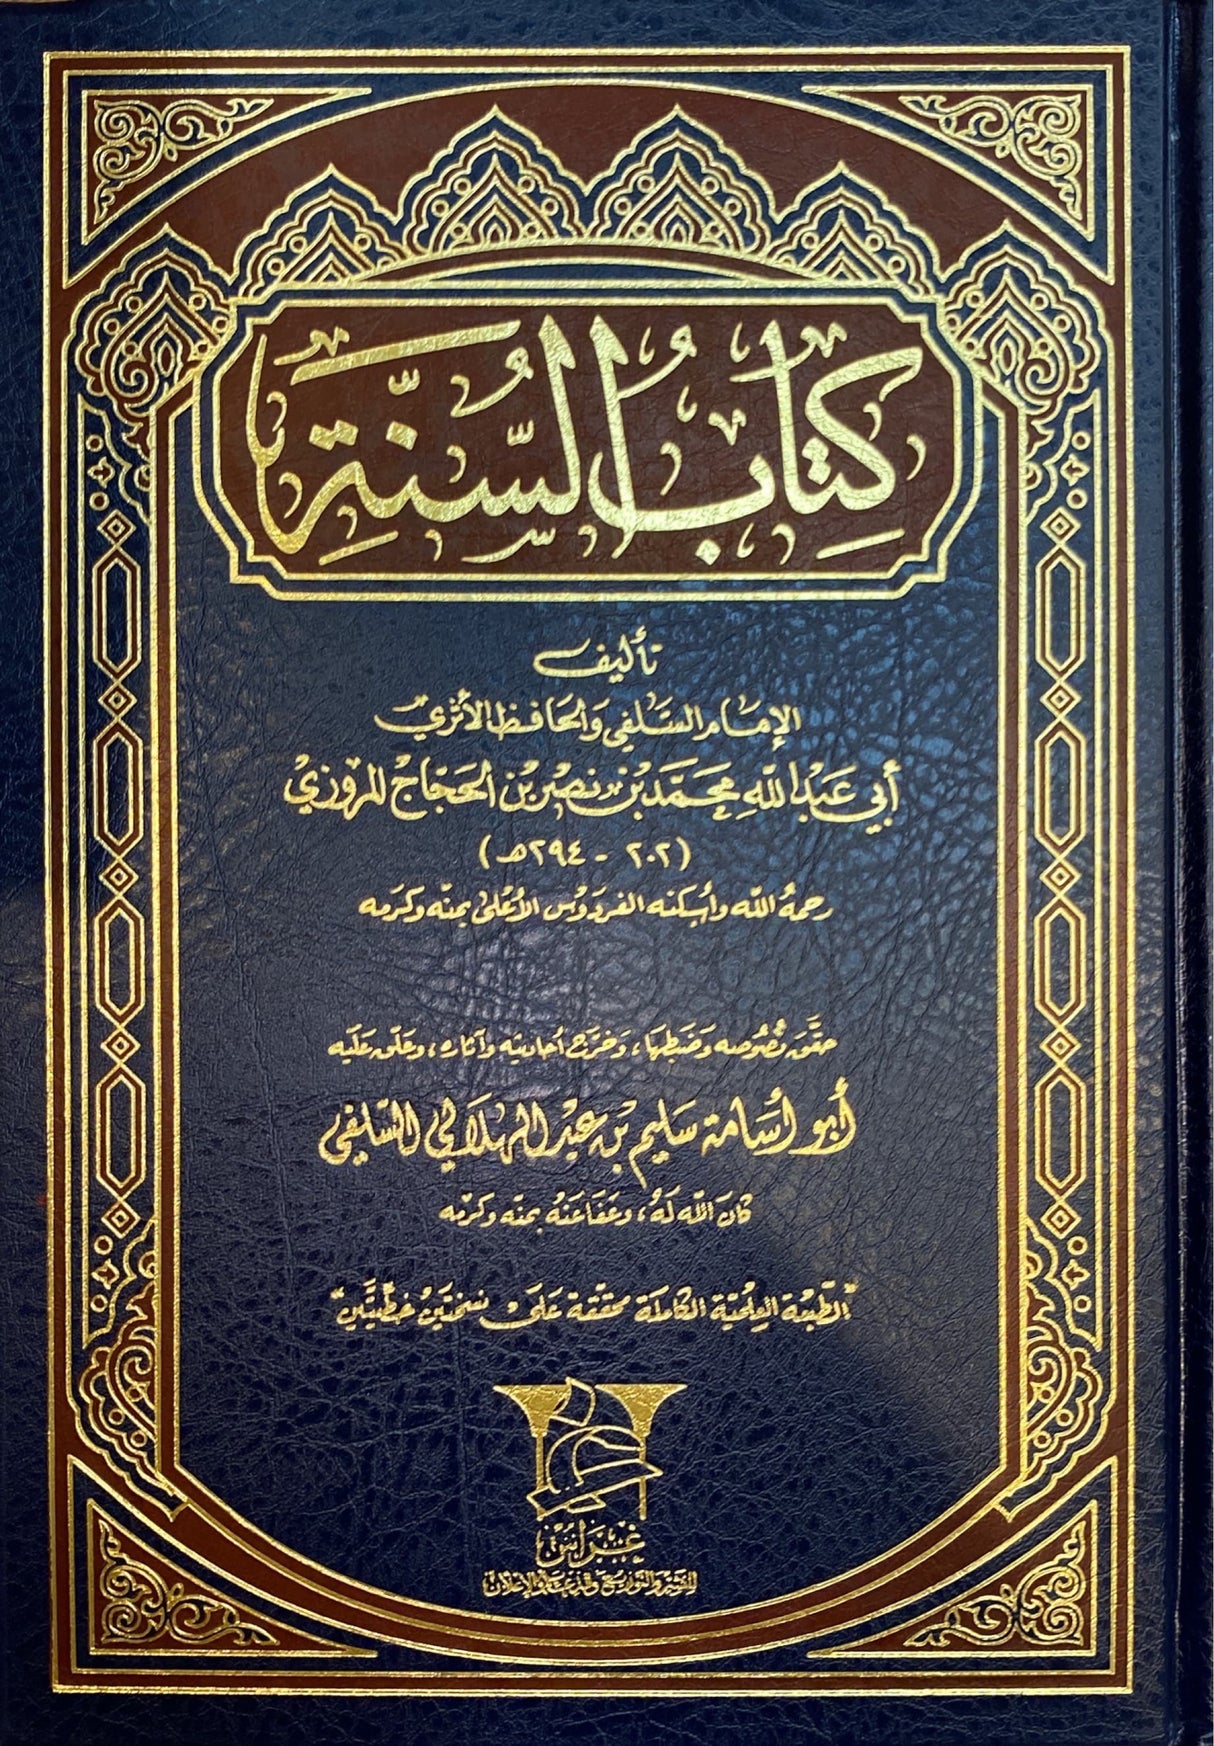 كتاب السنة     Kitabus Sunah Marwazi